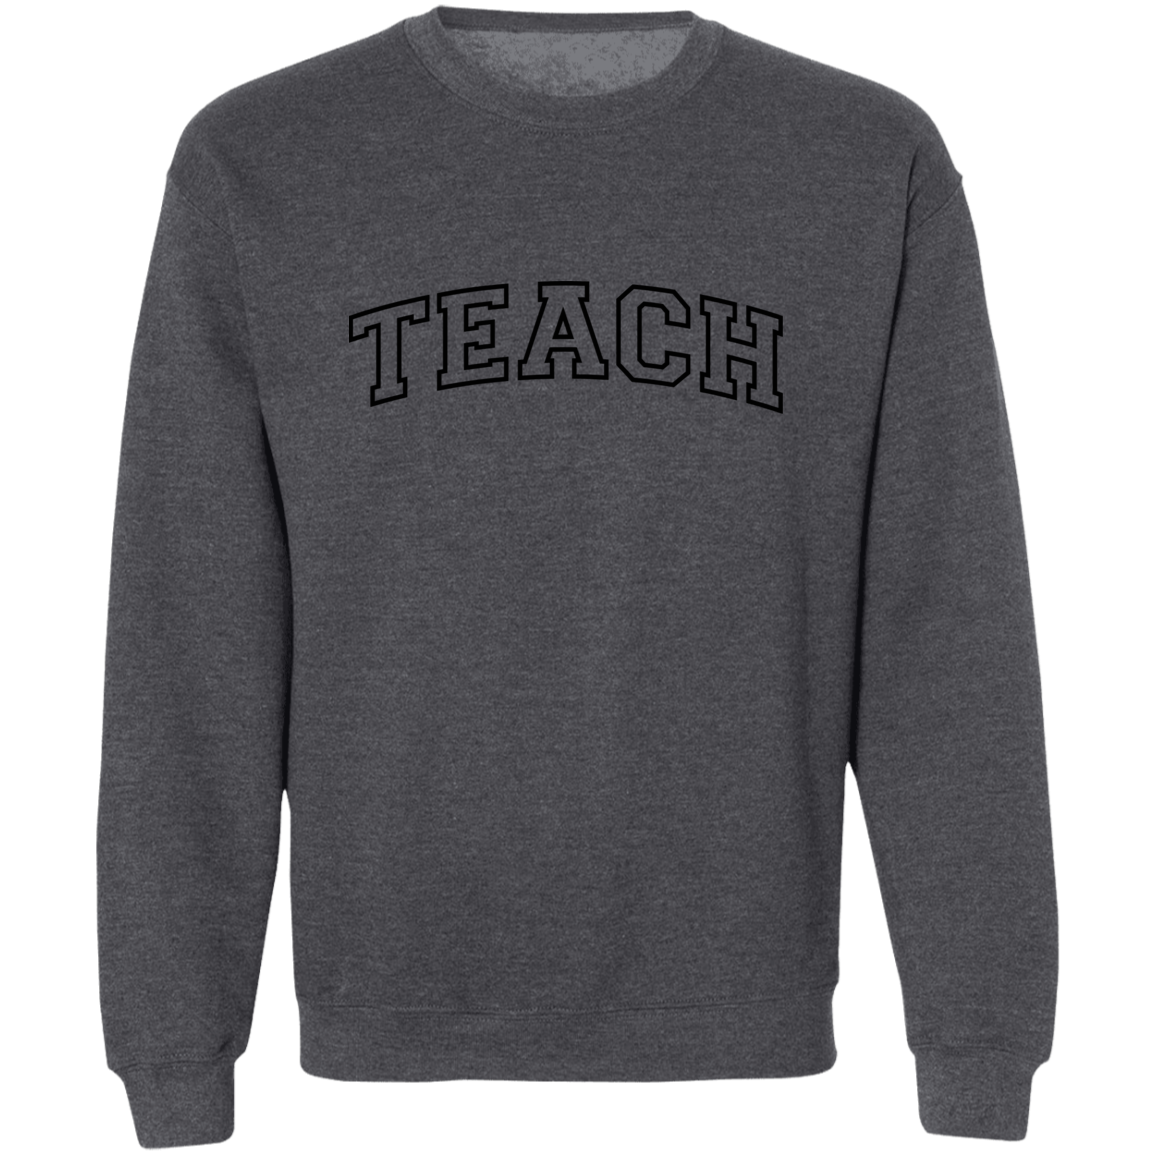 The Most Inspiring "Teach" T-Shirt/Sweatshirt